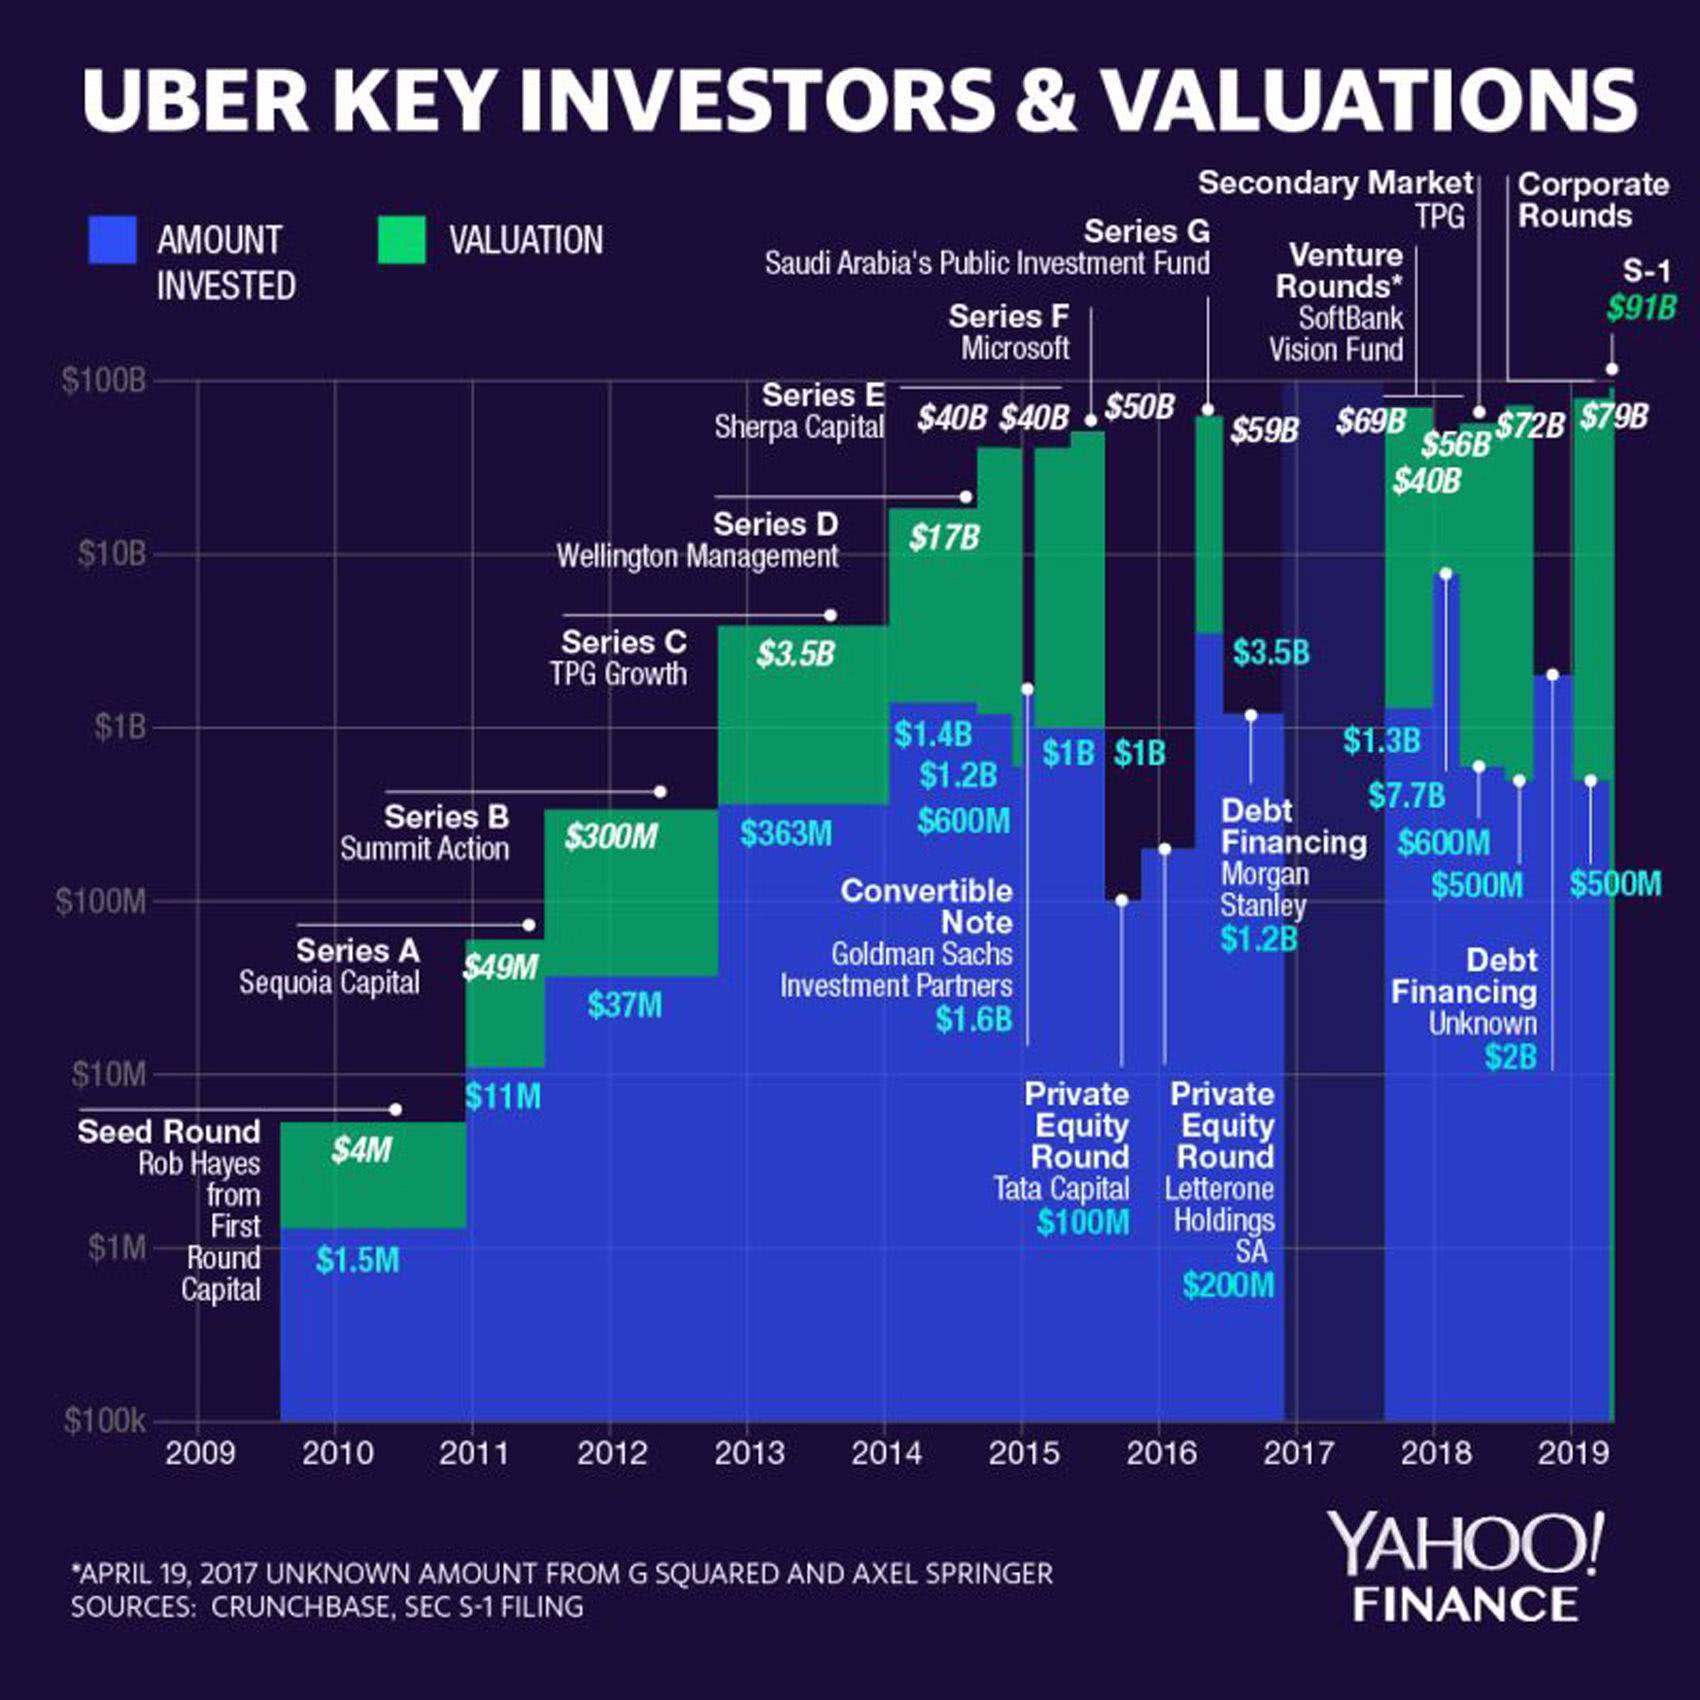 Uber 关键投资人及估值 | 雅虎财经